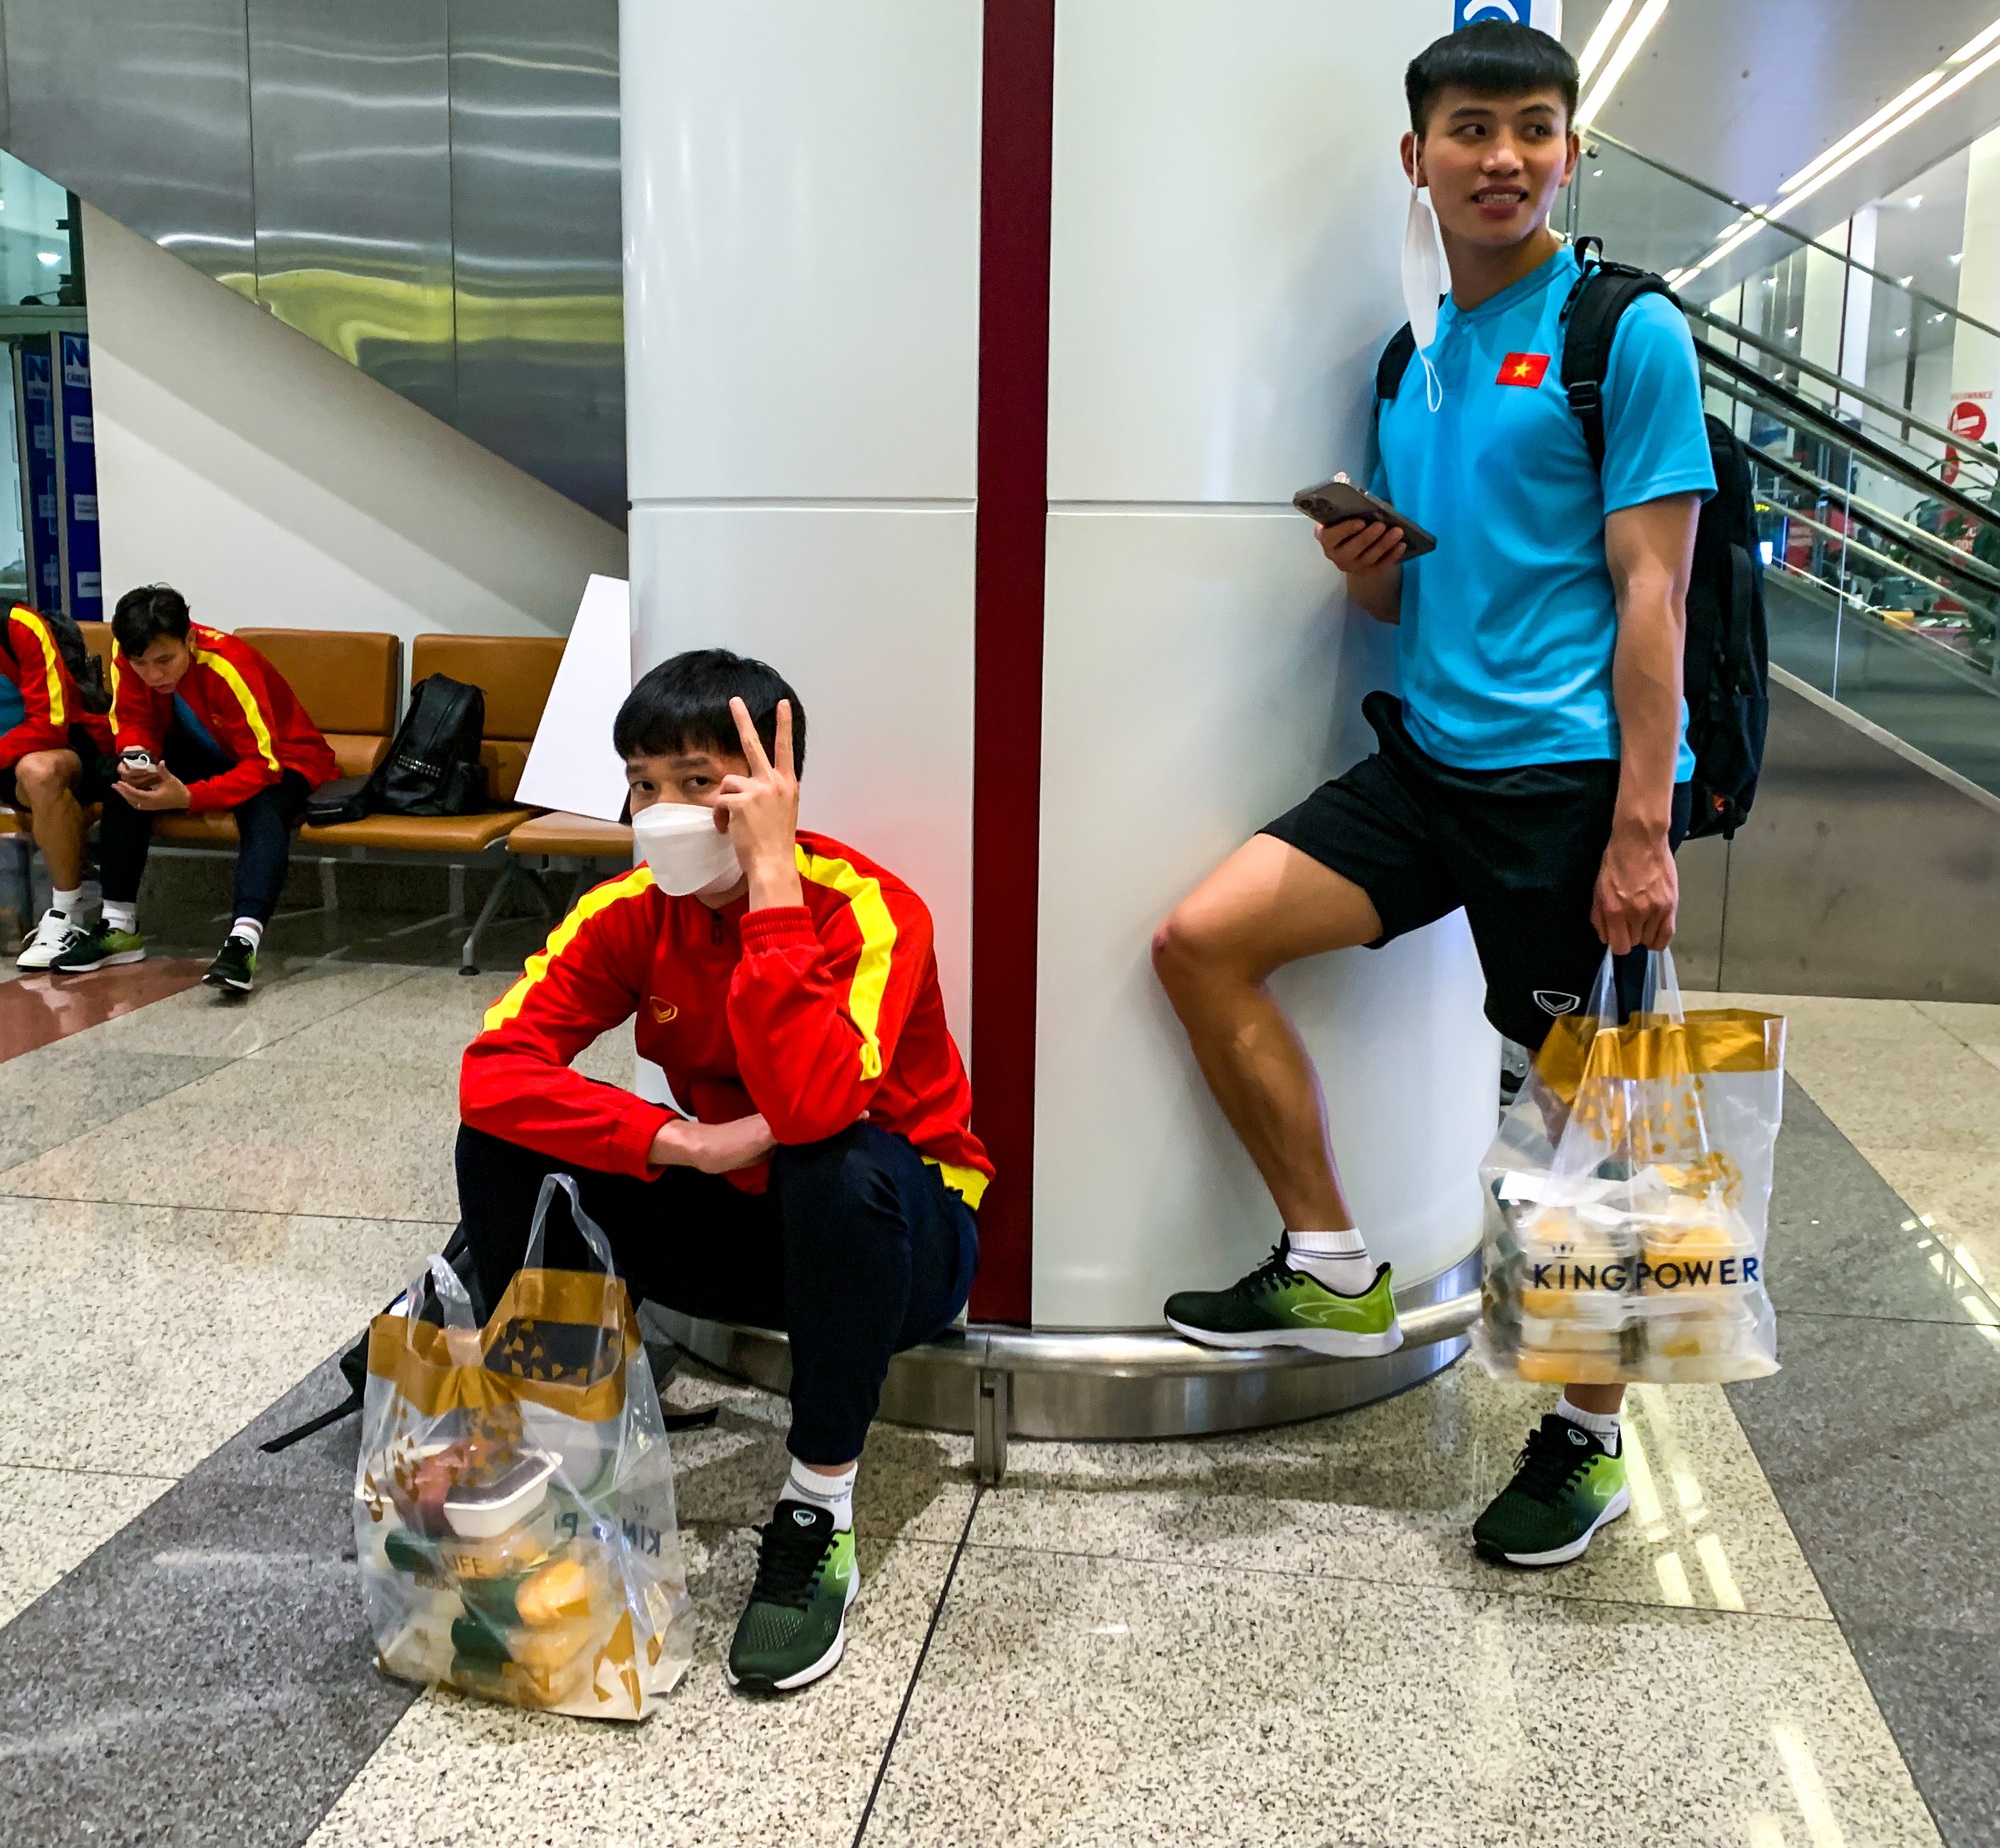 Đội tuyển Việt Nam về nước: Các cầu thủ mệt nhoài, ngồi chờ lấy hành lý - Ảnh 3.